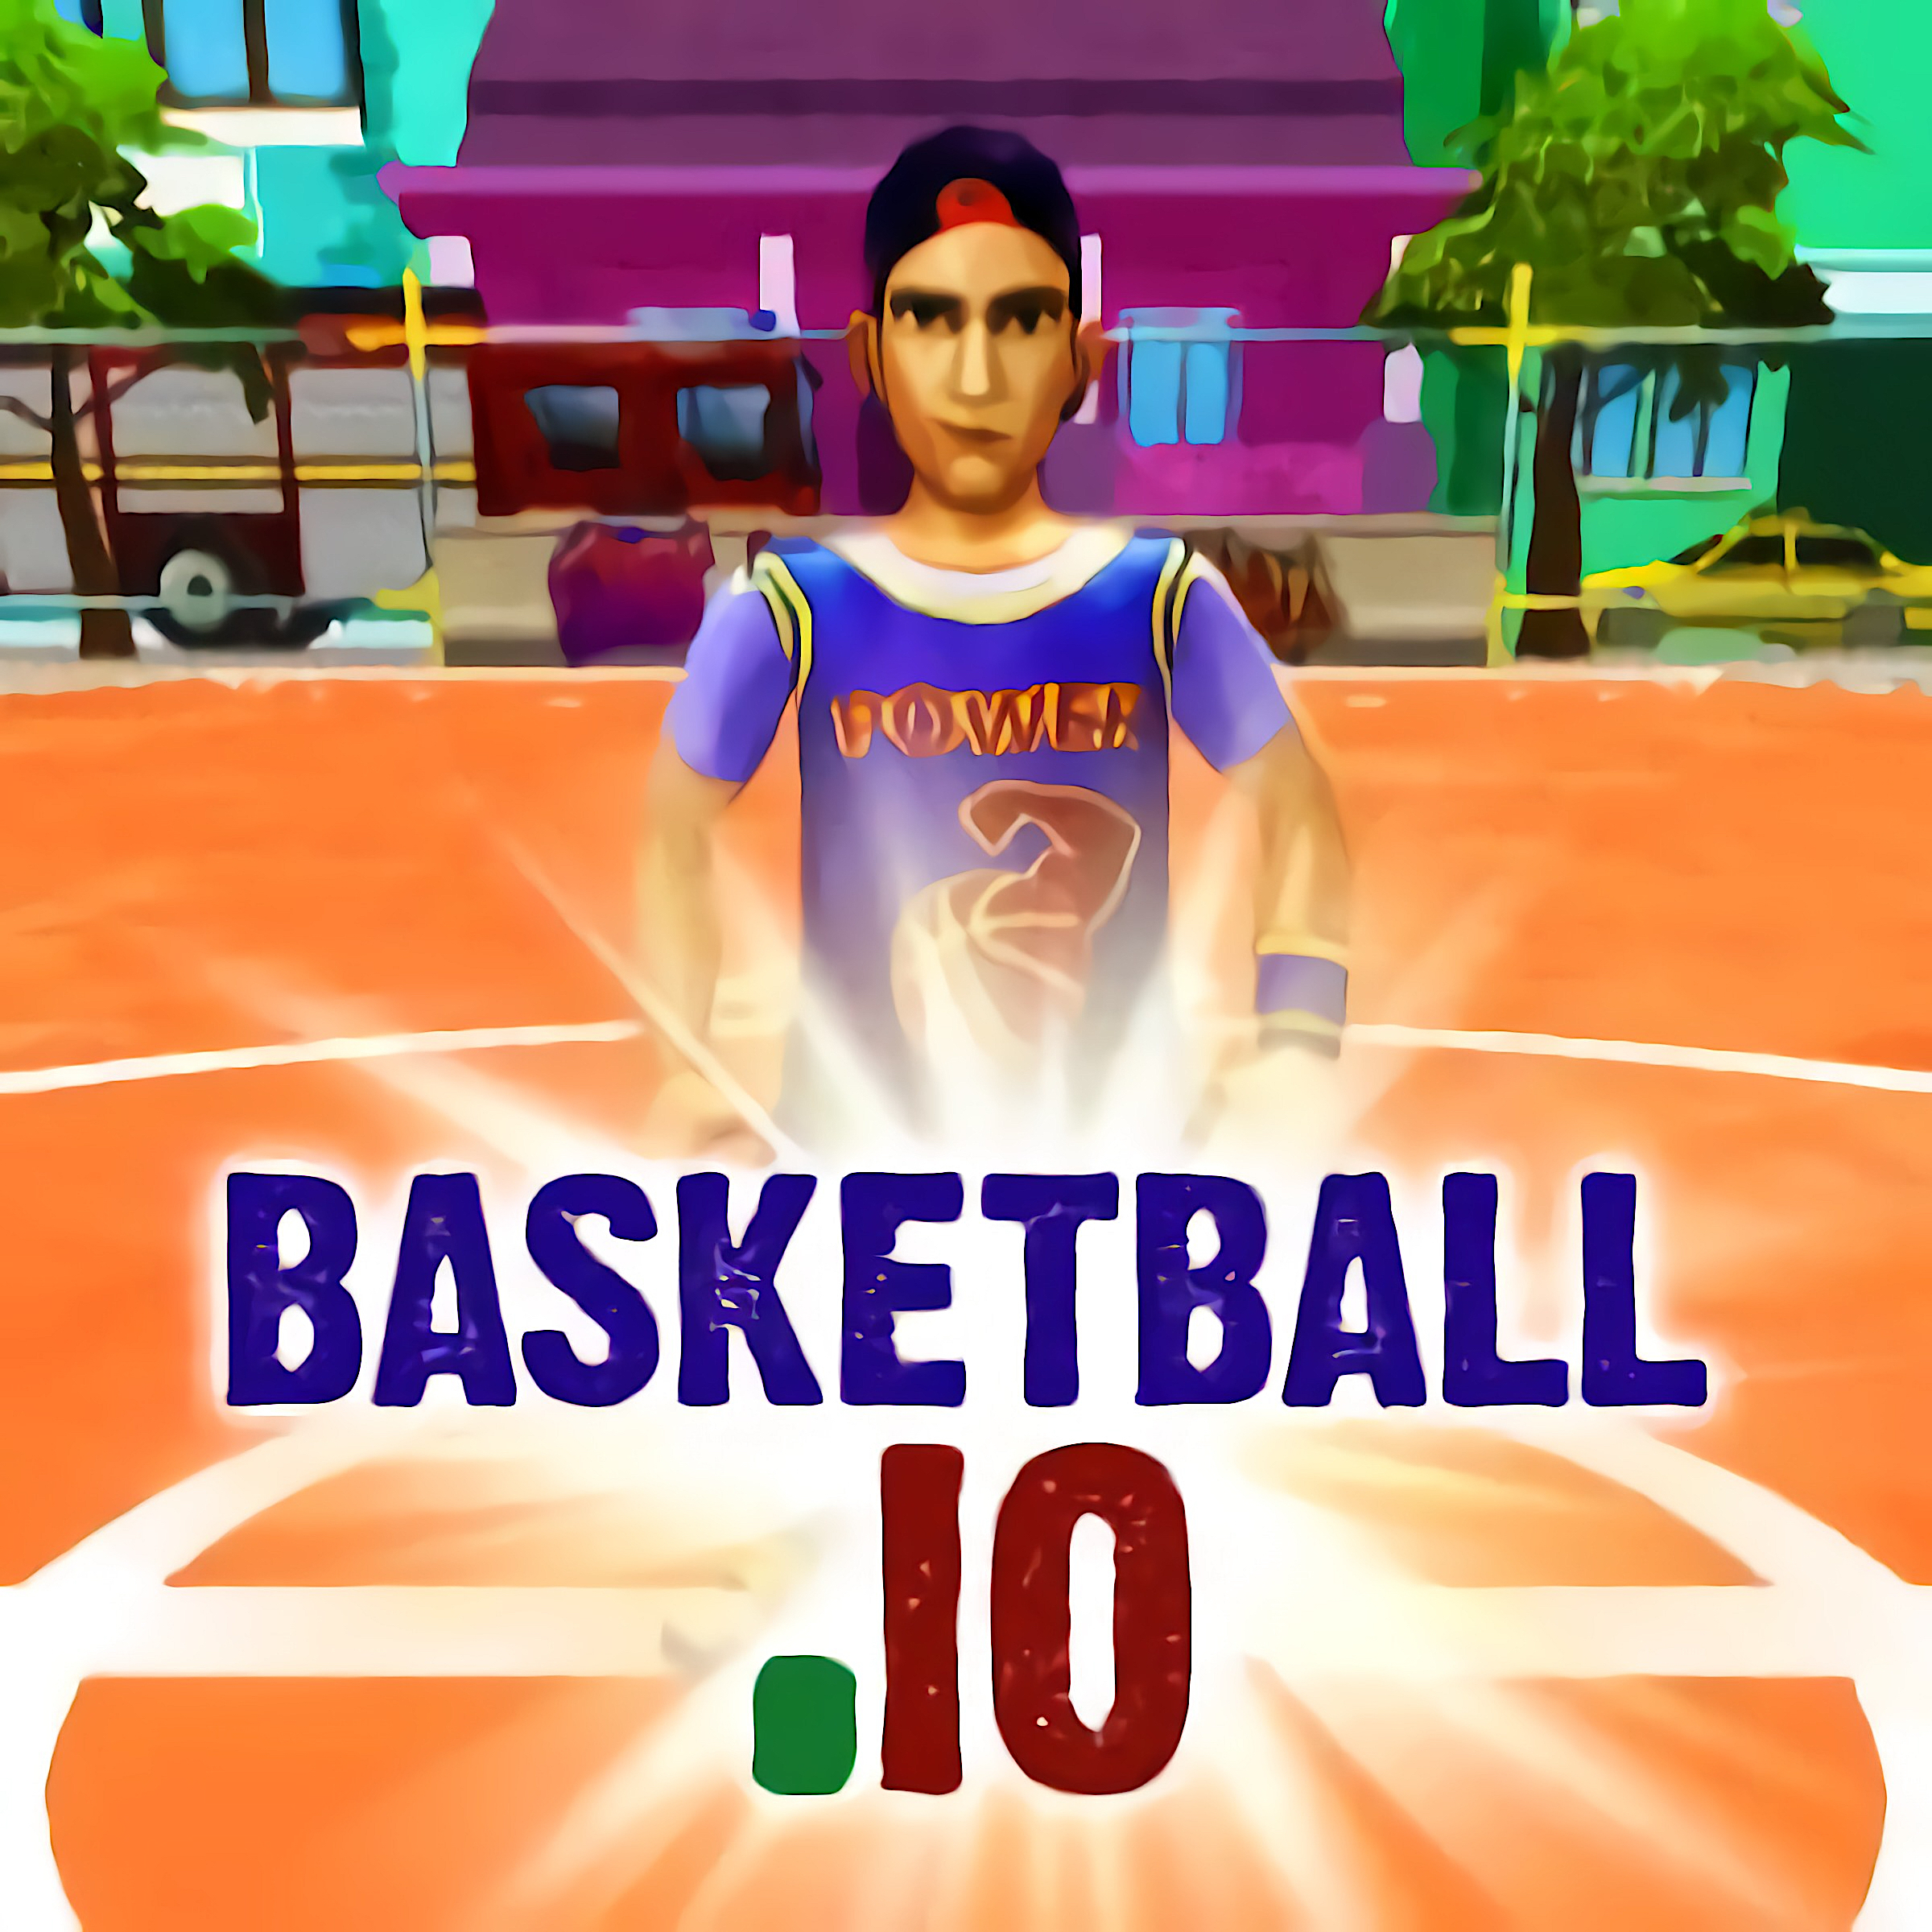 Basketball.iO